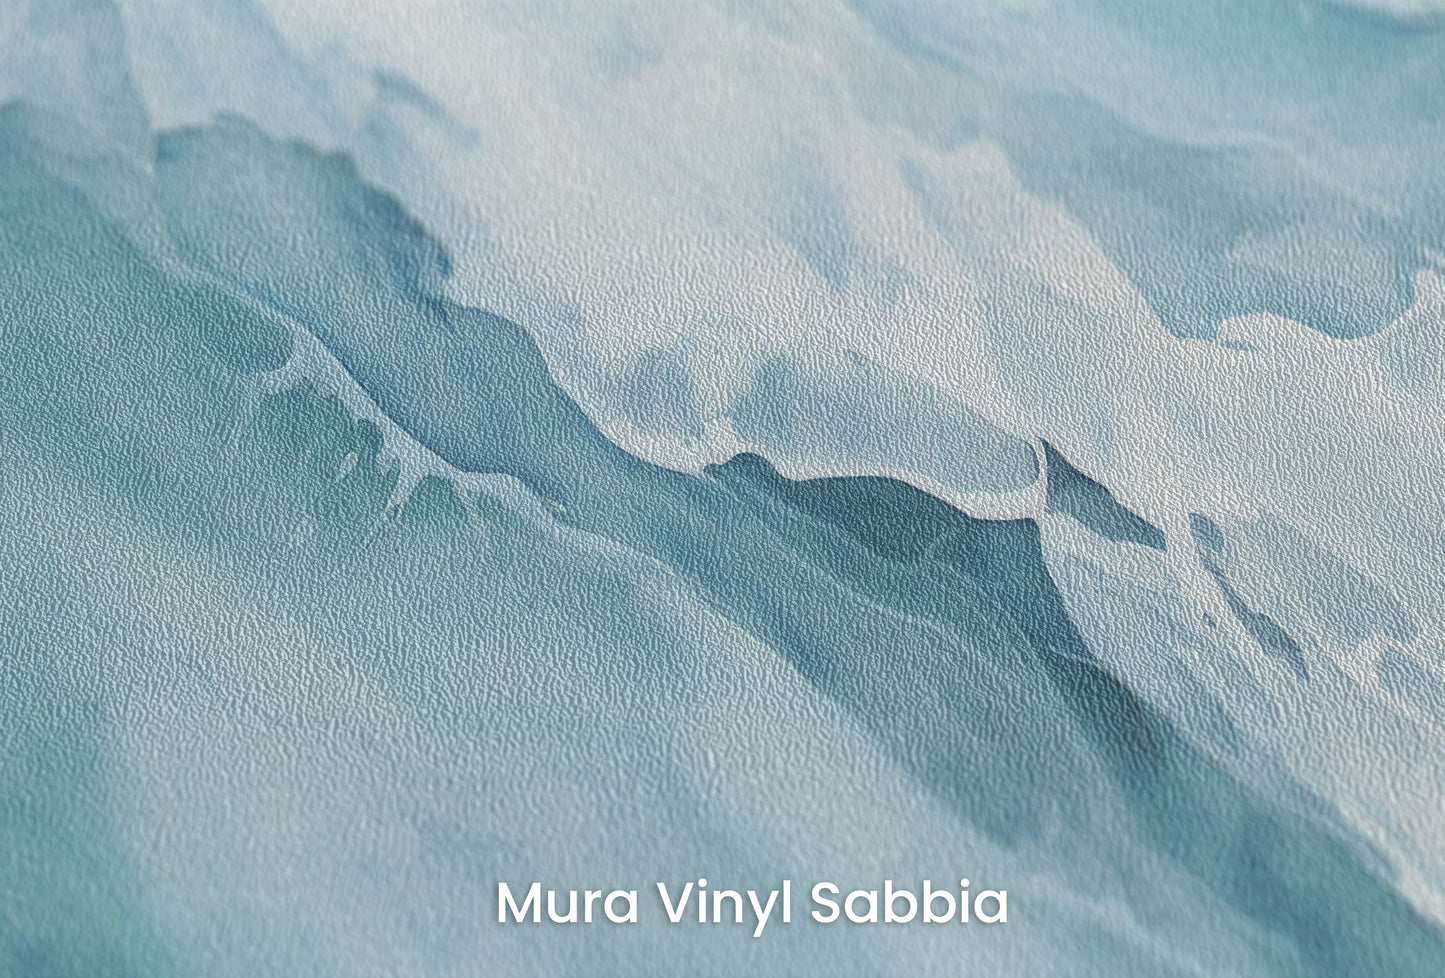 Zbliżenie na artystyczną fototapetę o nazwie Solar Flare na podłożu Mura Vinyl Sabbia struktura grubego ziarna piasku.